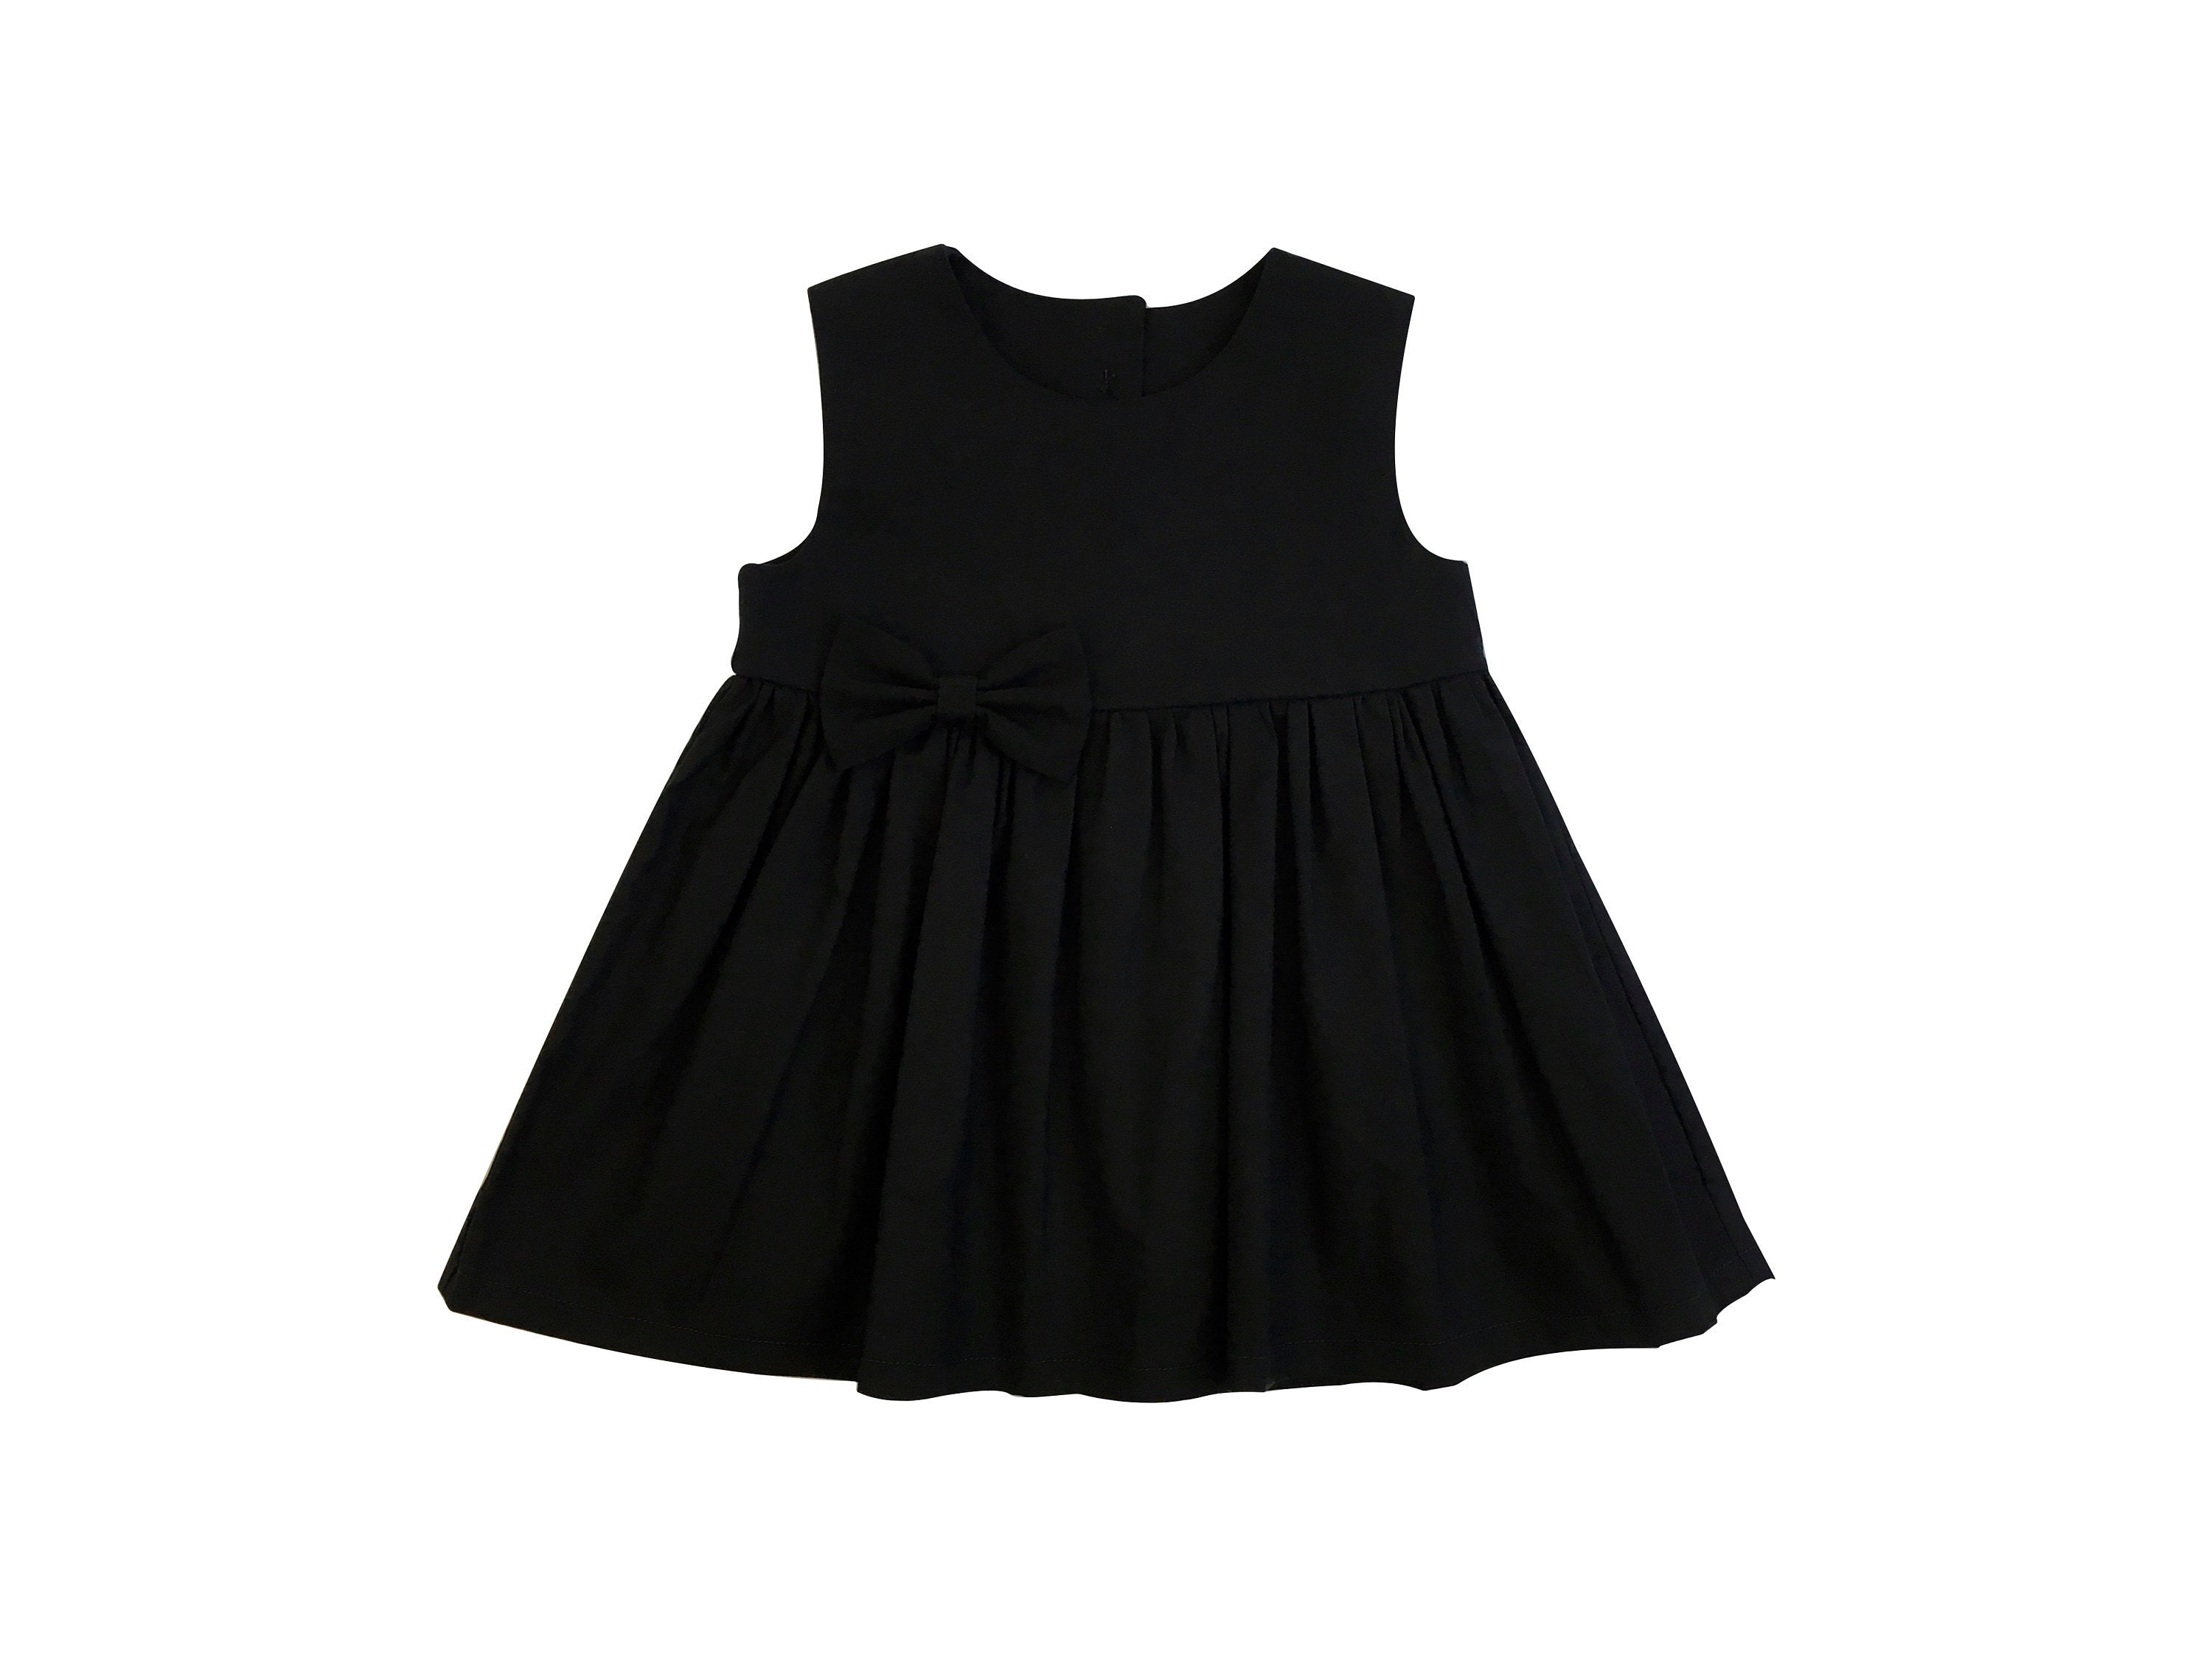 Little Black Dress Baby Black Dress Black dress for toddler | Etsy